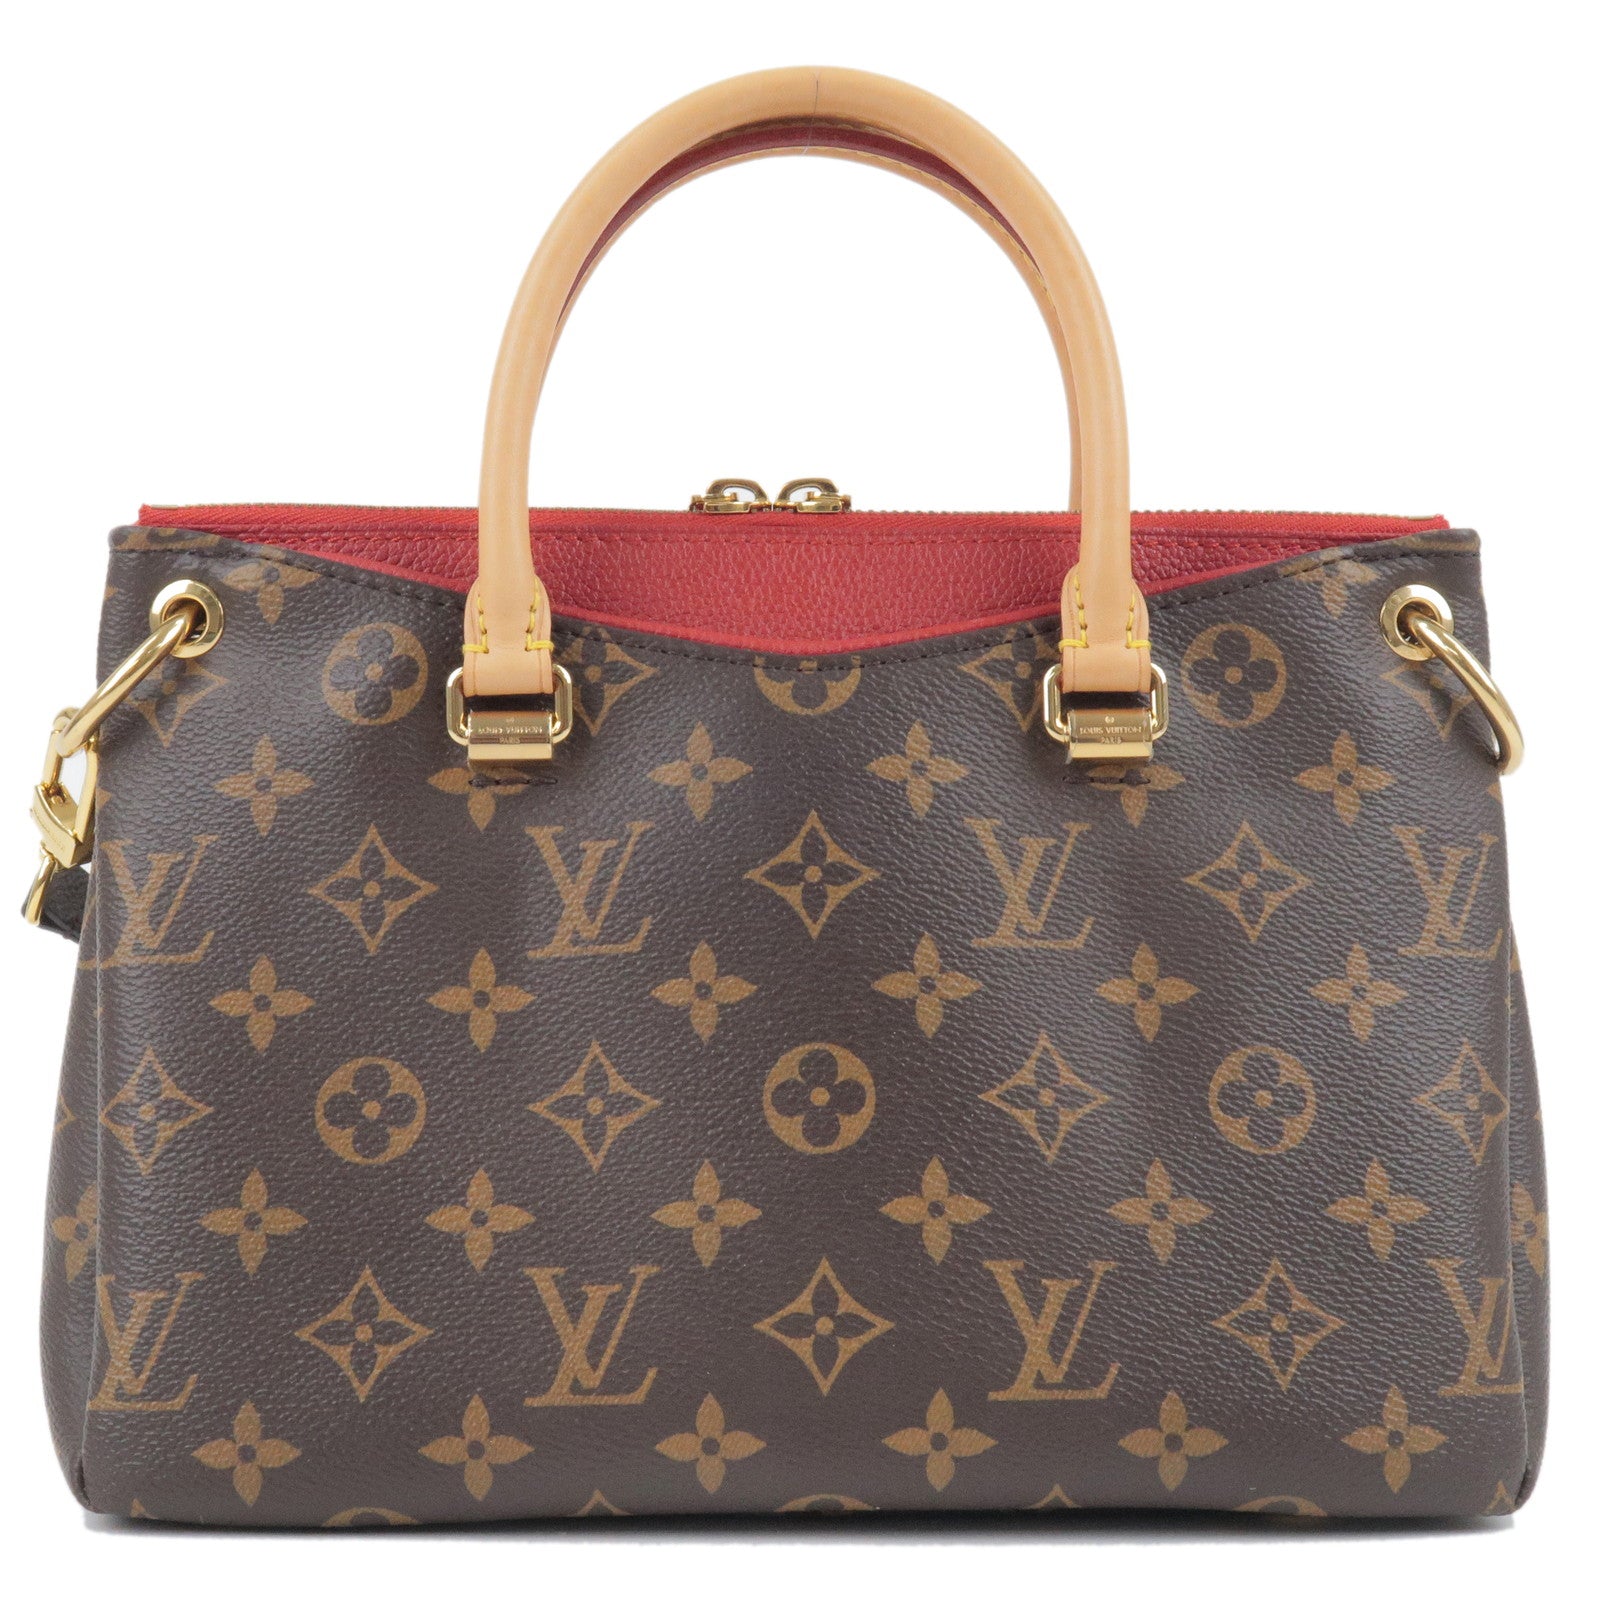 My First Louis Vuitton Bag: The Pallas BB 